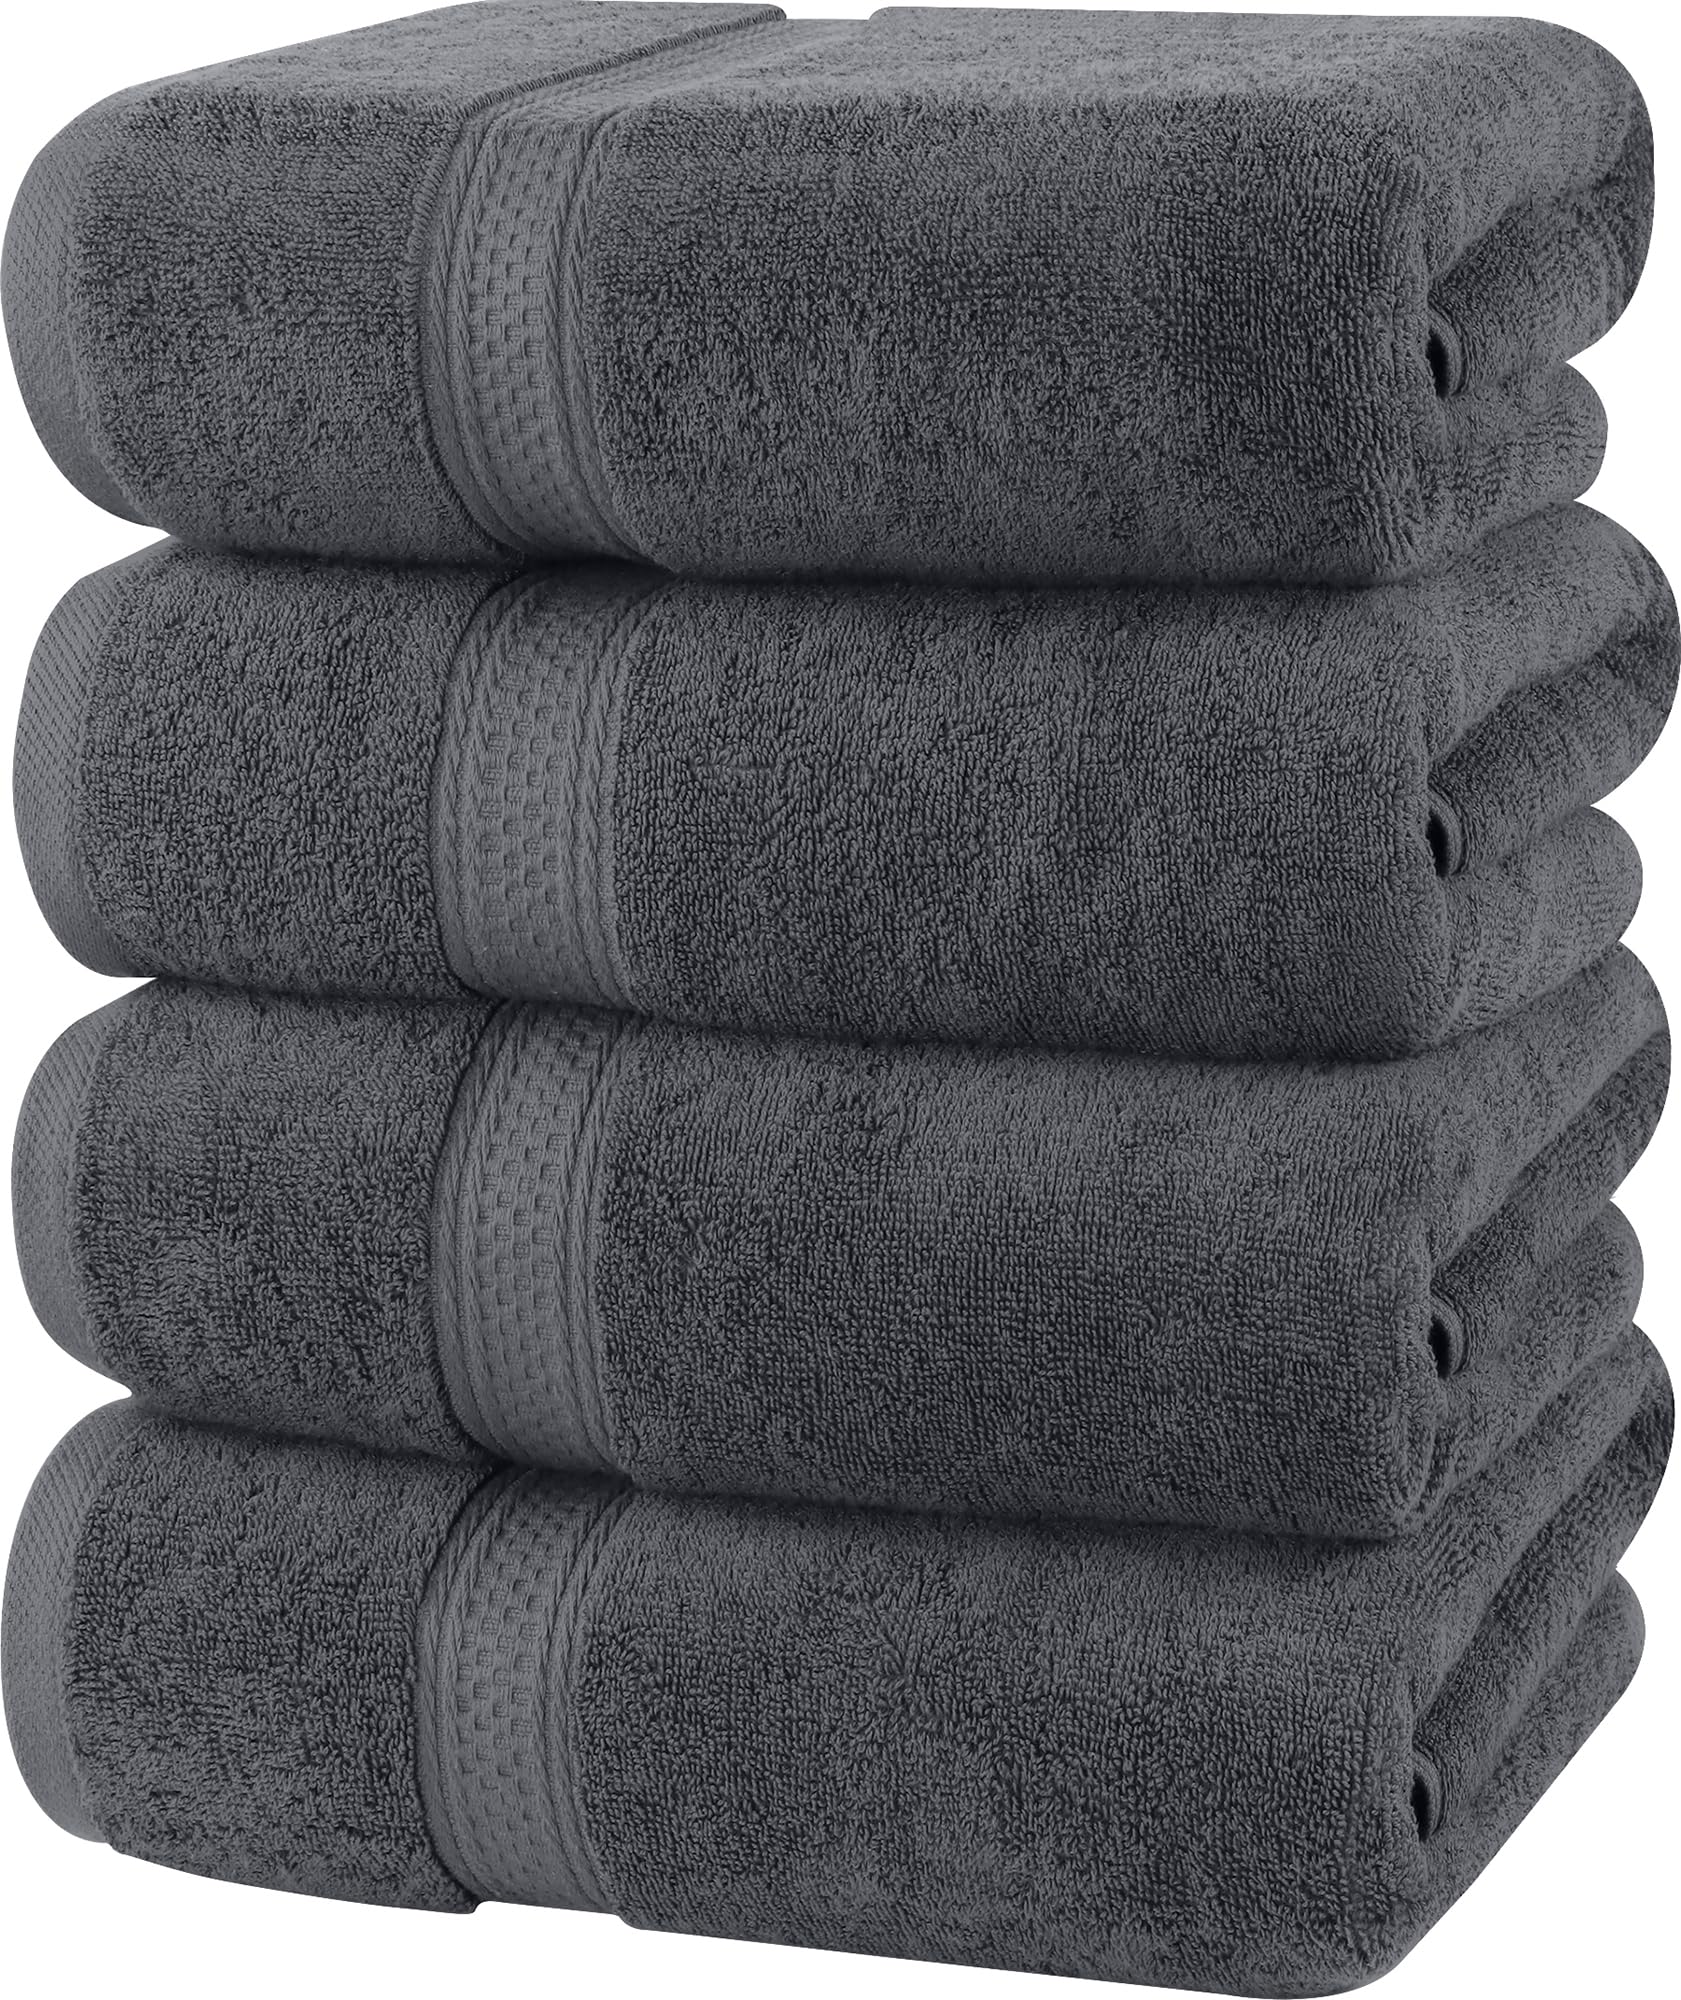 chic  Utopia Towels - Lot de 4 Serviettes de Bain luxueuses - 100% Coton filé à l´anneau, séchage Rapide, très absorbantes, Douces au Toucher, parfaites pour Un Usage Quotidien - Gris X6itTIYFR en solde